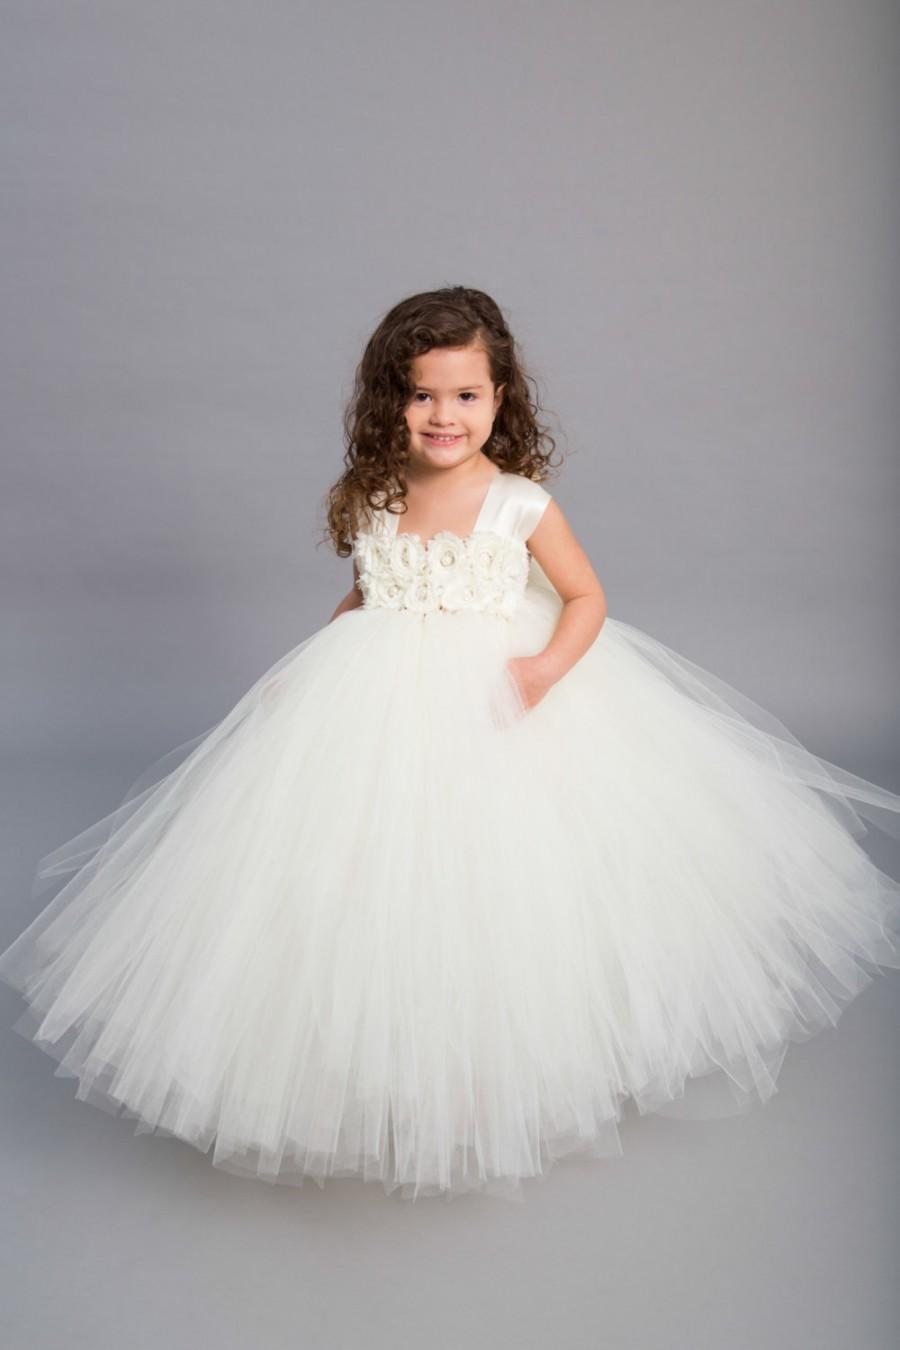 Wedding - Flower girl dress - Tulle flower girl dress - Ivory Dress - Tulle dress-Infant/Toddler - Pageant dress - Princess dress - Ivory flower dress